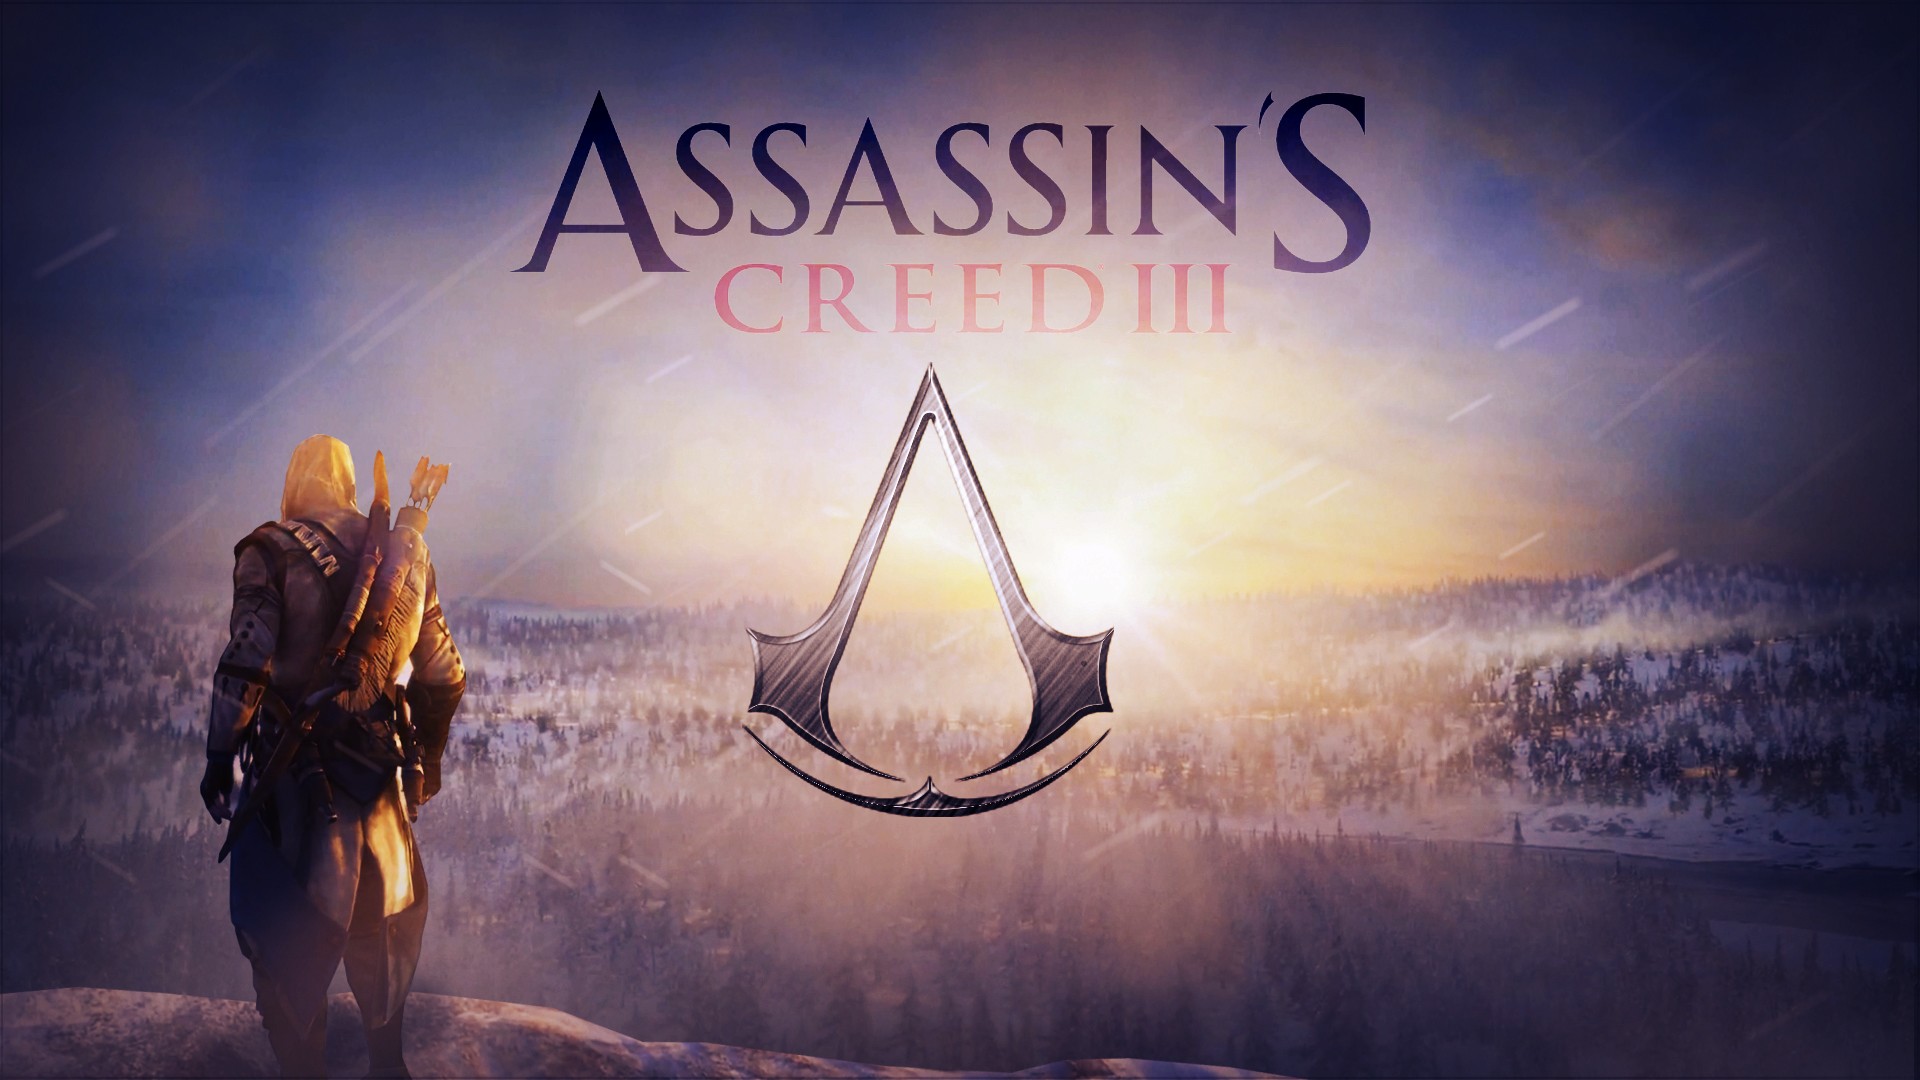  Assassin's Creed III